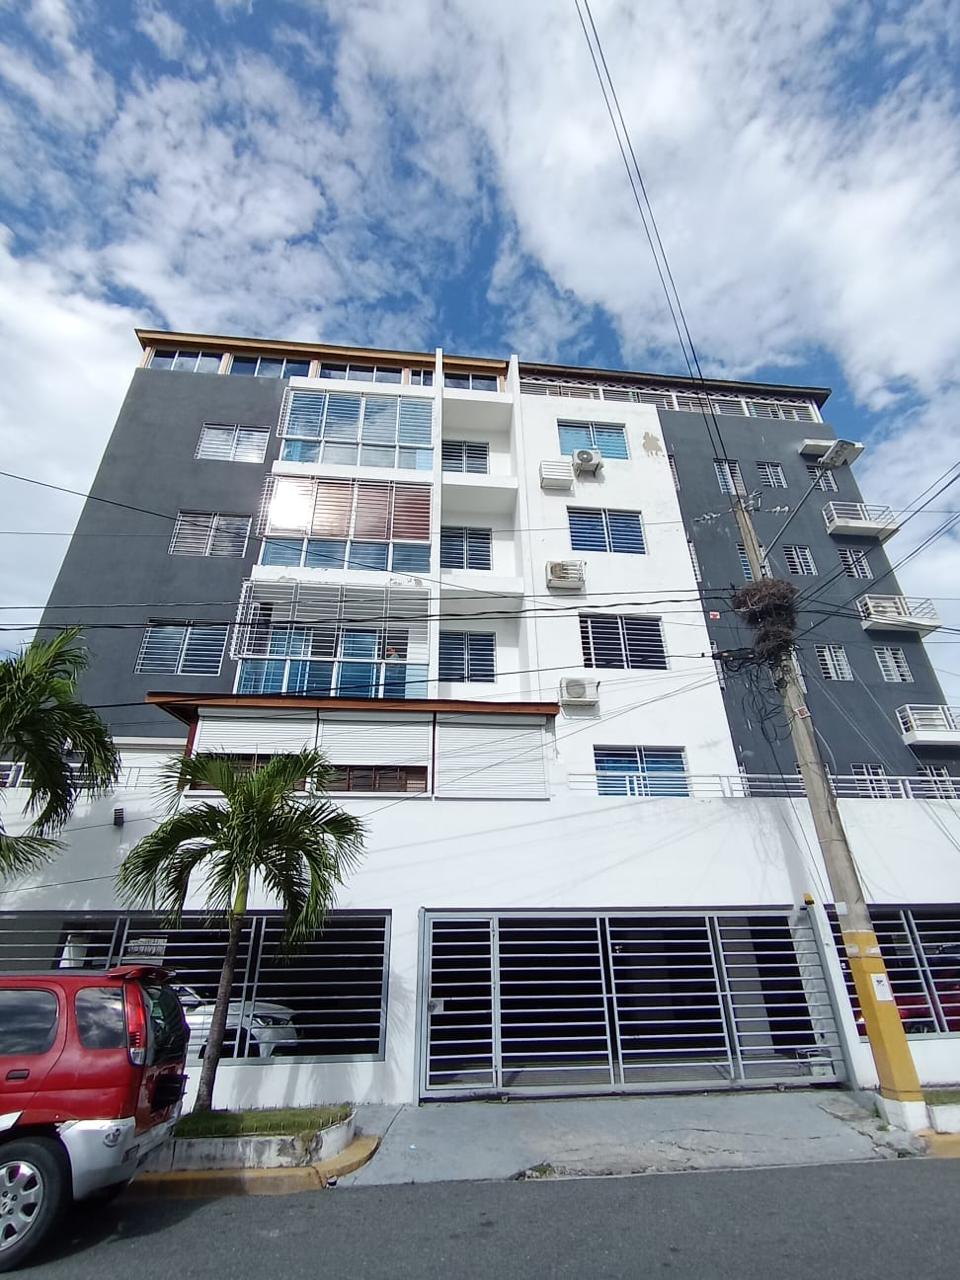 Apartamento Tipo Penthouse en Miraflores 4to. y 5to. Nivel Foto 7221969-1.jpg